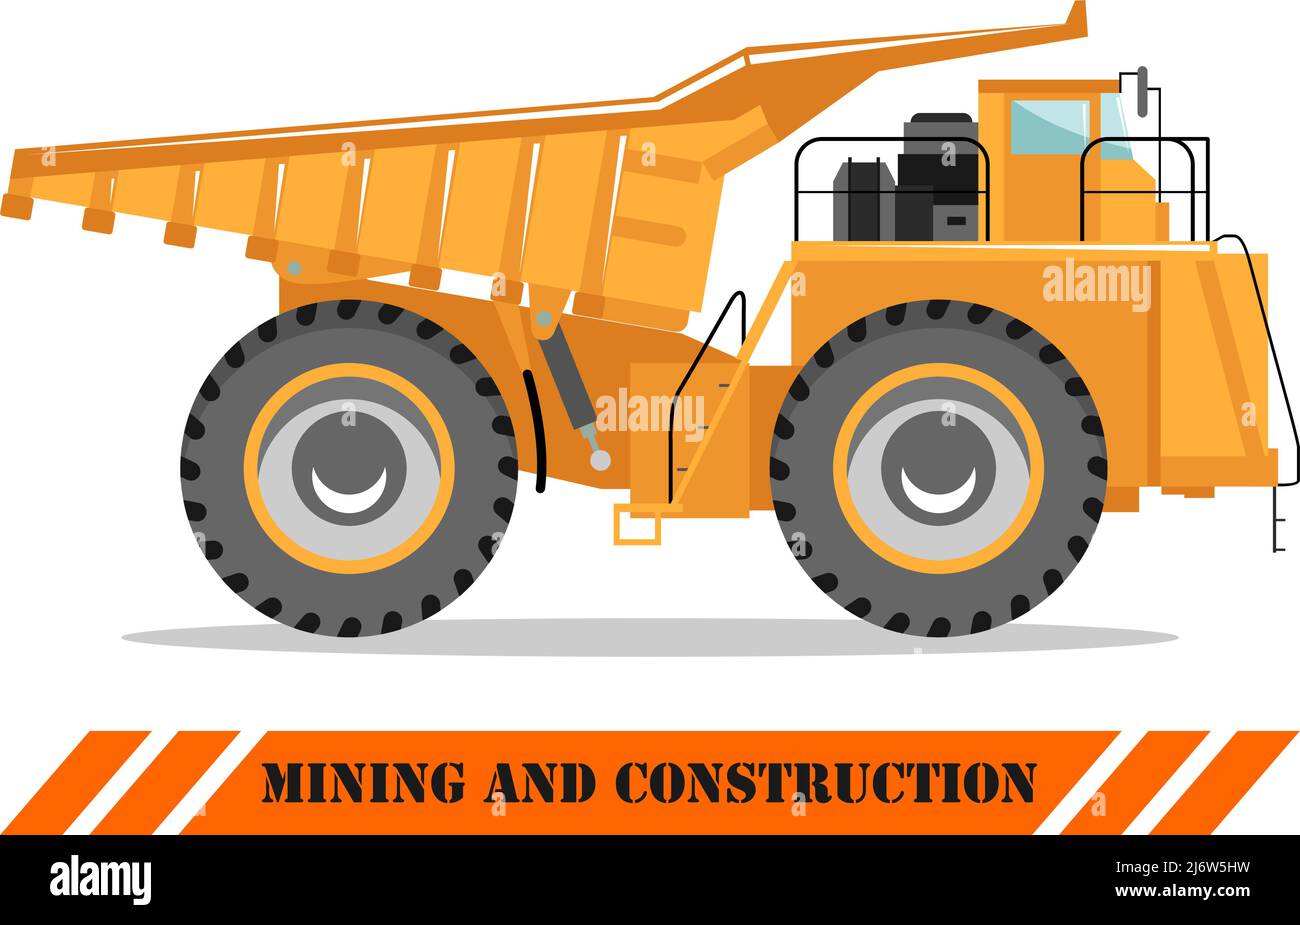 Illustrazione dettagliata delle miniere di carrello. Off-highway truck. Pesante macchina mineraria equipmente e costruzione di macchinari. Illustrazione Vettoriale